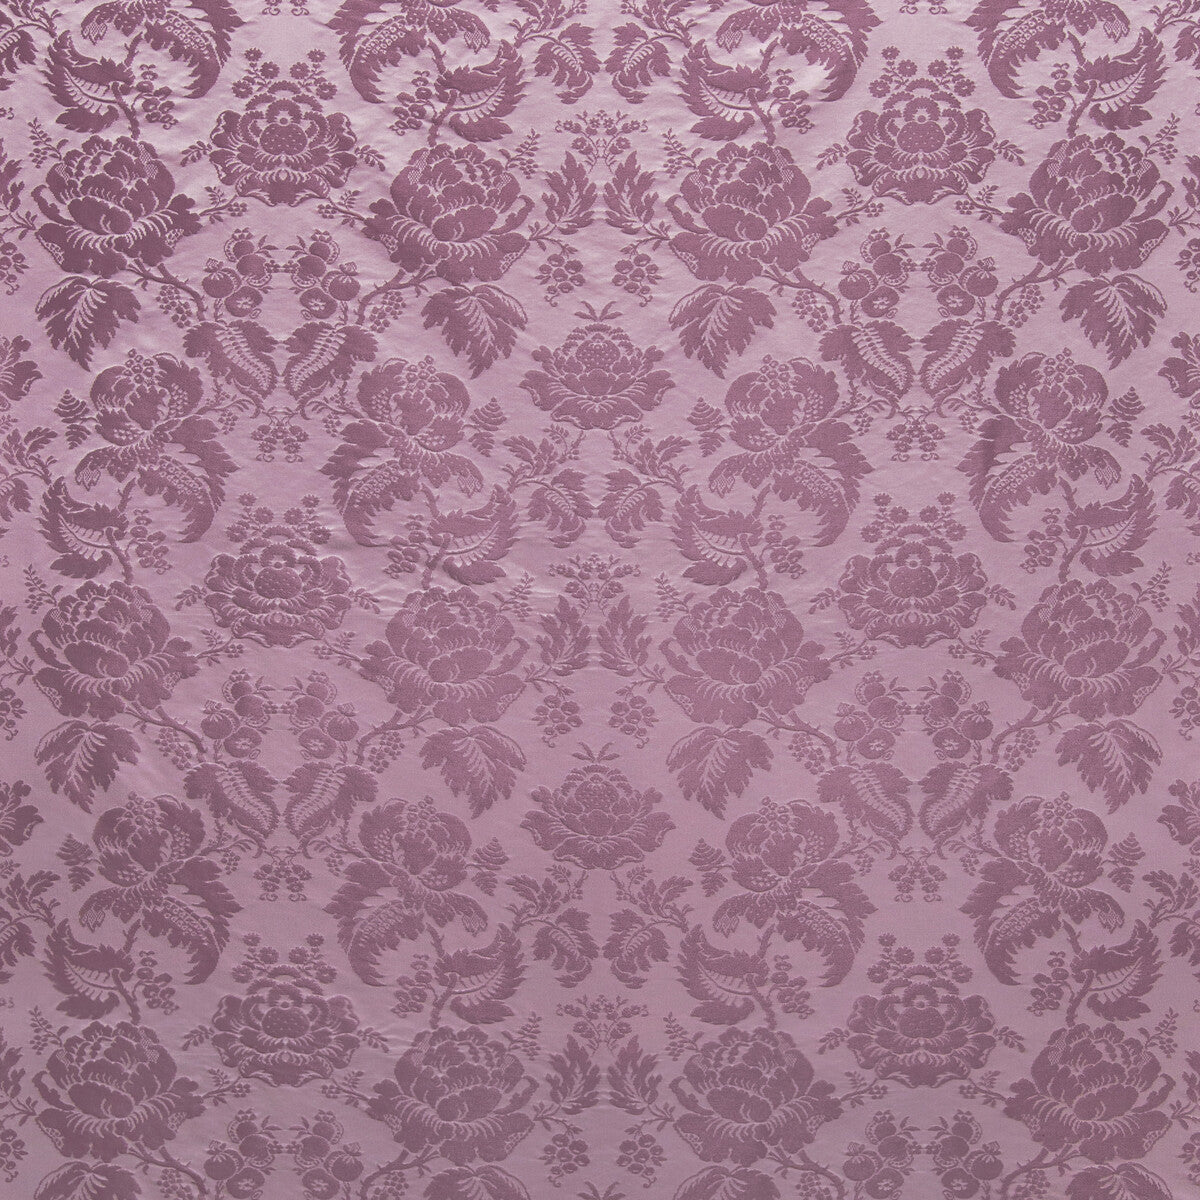 Moulins Damask fabric in lavender color - pattern BR-81035.1110.0 - by Brunschwig &amp; Fils